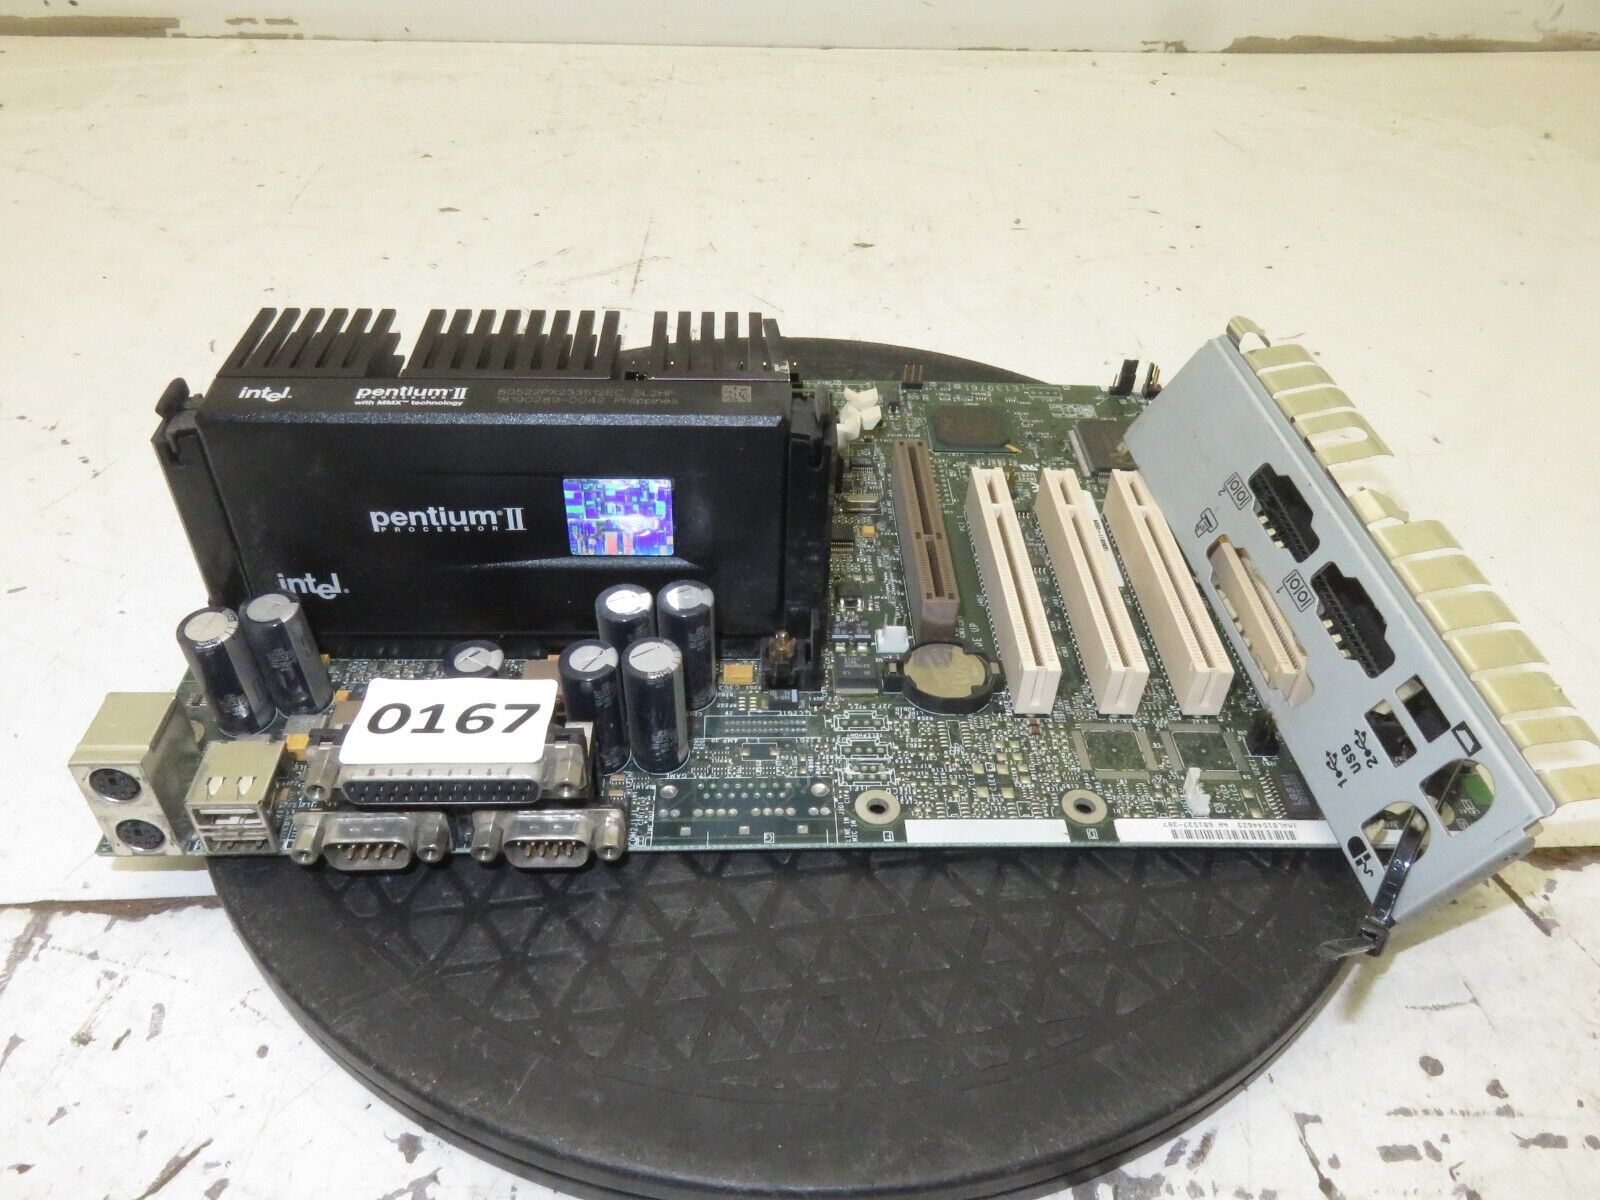 Intel AL440LX Motherboard w/ Intel PII Pentium 2 233MHz 32MB Ram